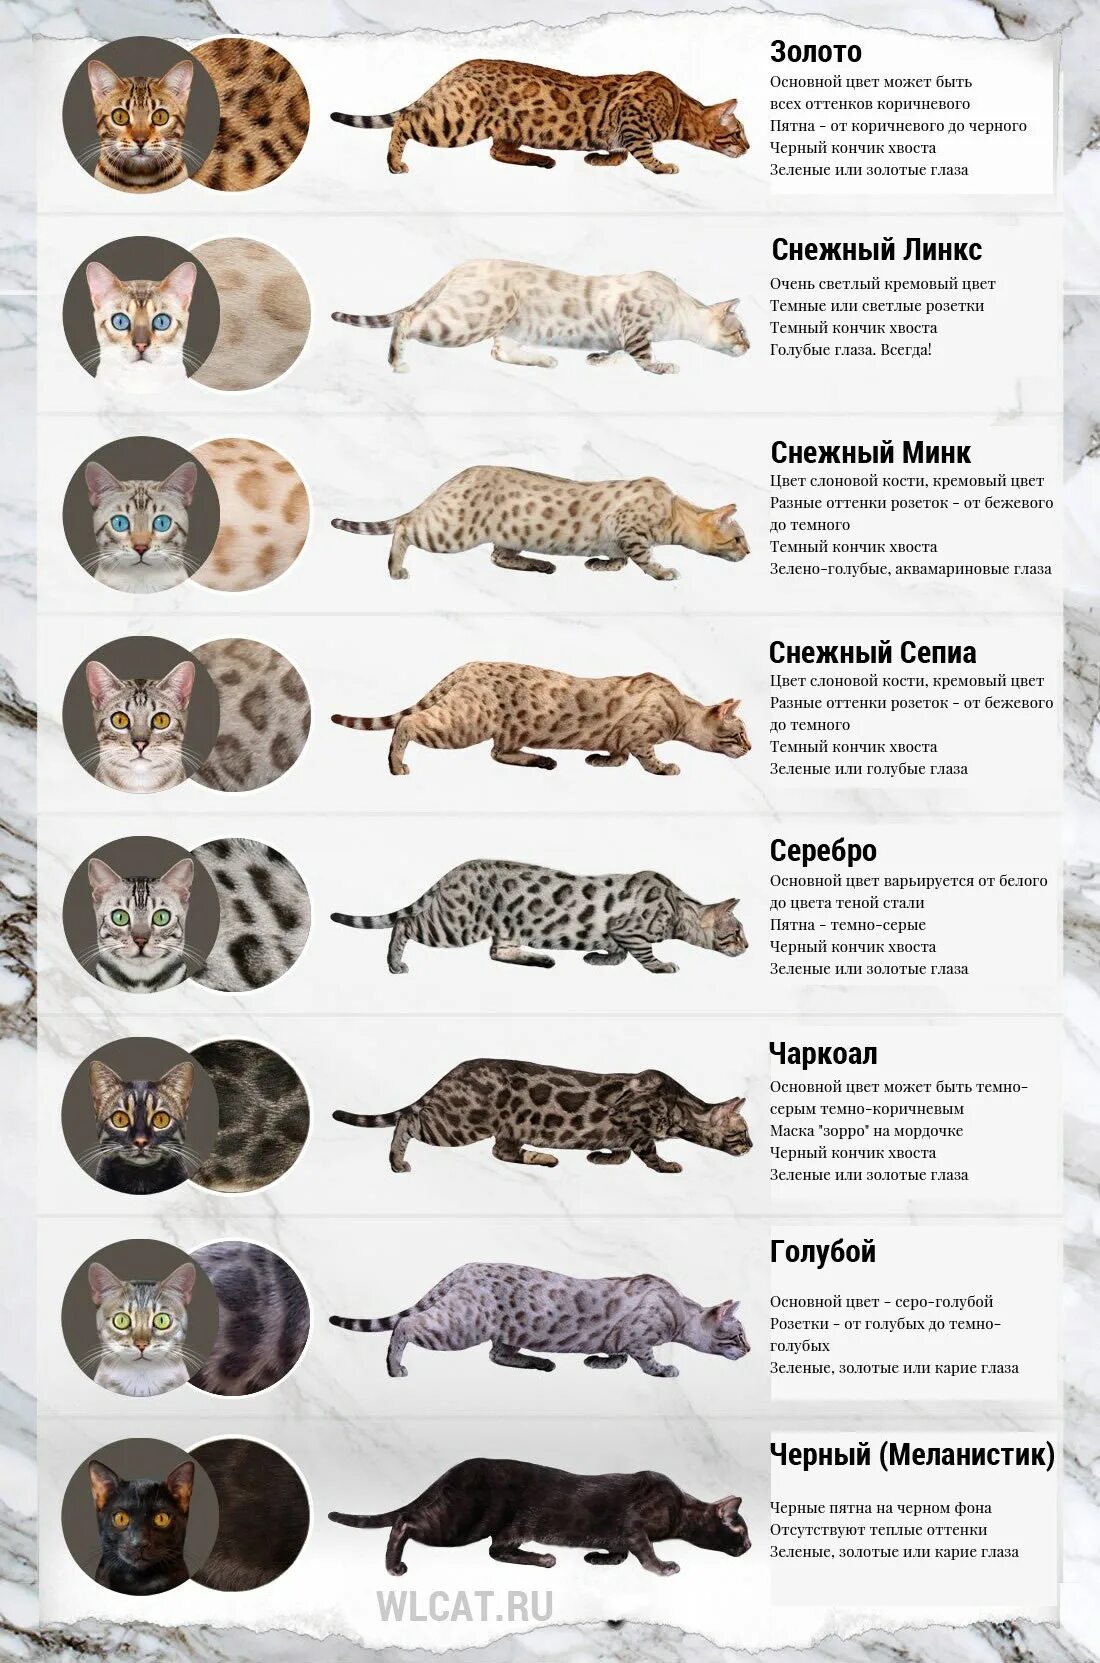 Окрас и тип шерсти кошек. Расцветки бенгалов таблица. Бенгальская кошка окрасы таблица. Таблица окрасов кошек бенгалов. Таблица расцветки бенгальских кошек.